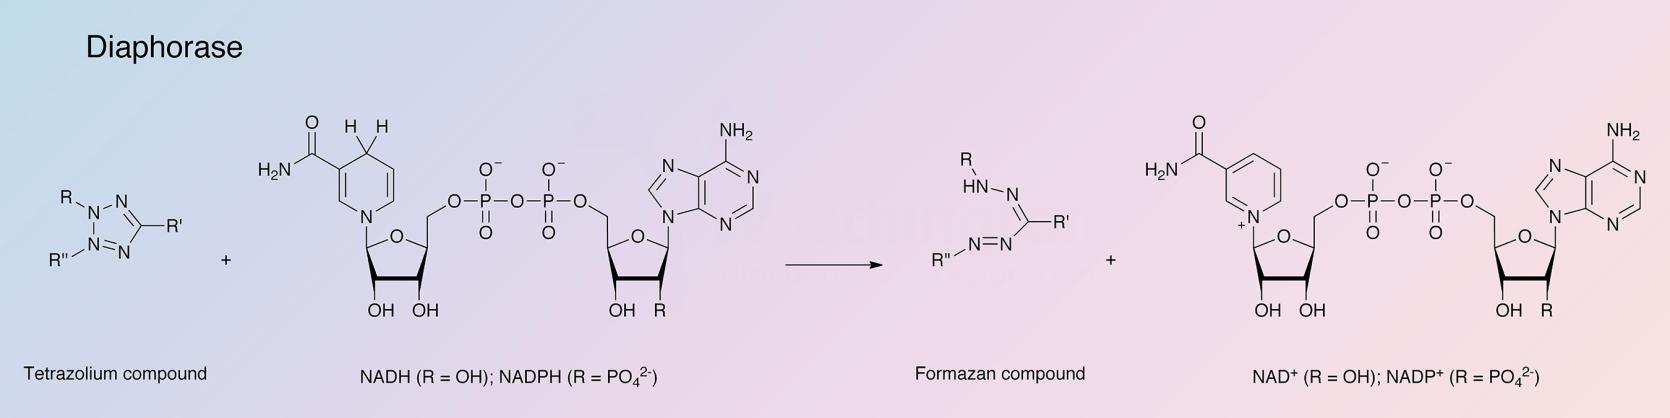 Diaphorase Enzymatic Reaction